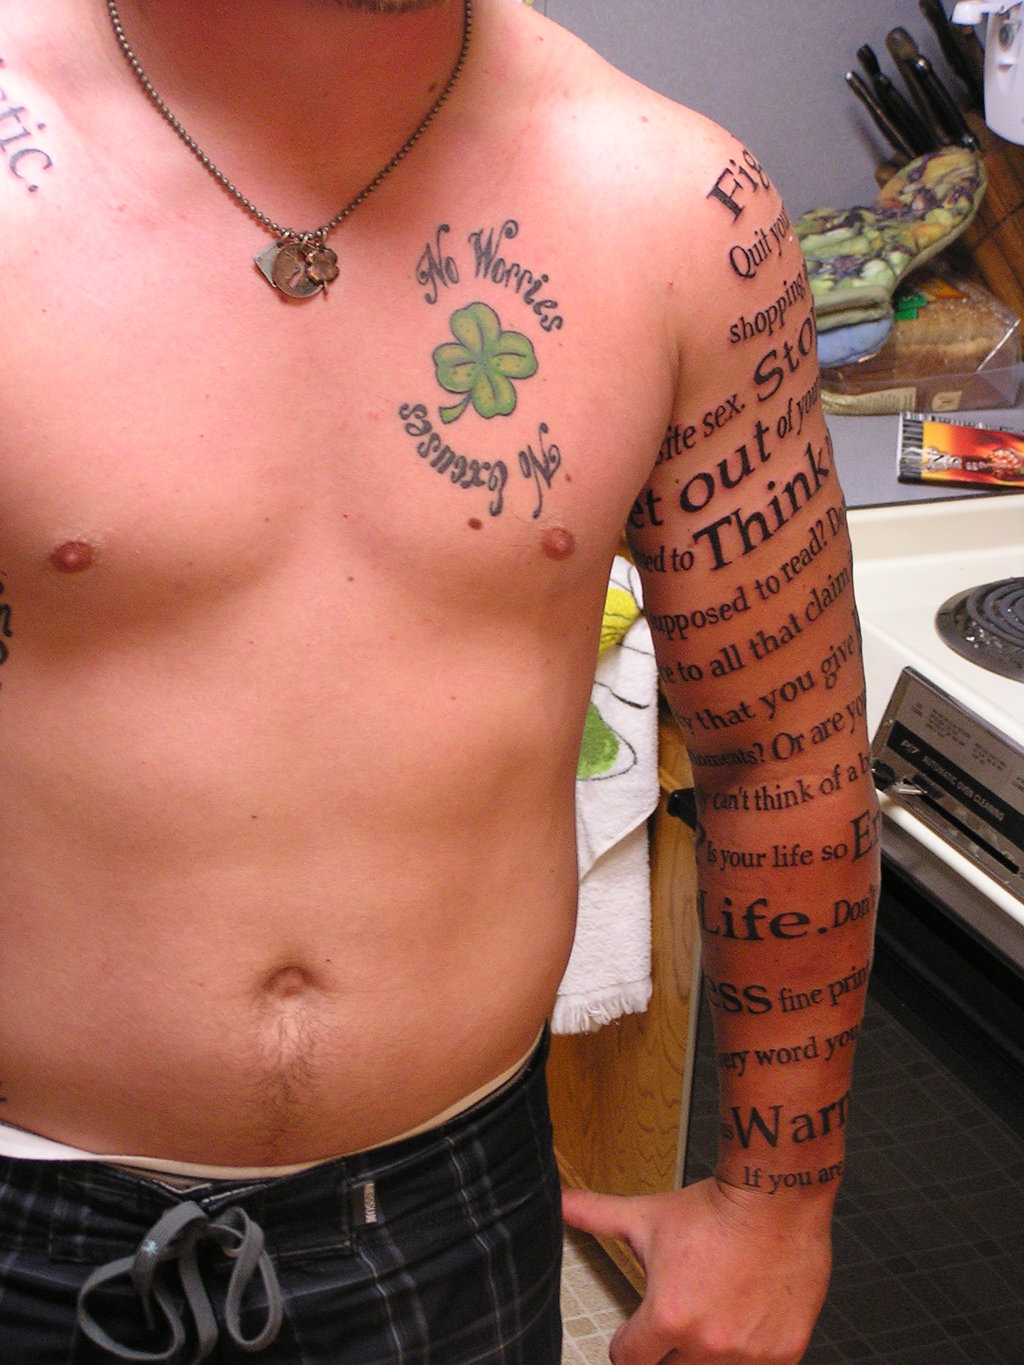 Word tattoos - Jeff VanderMeer